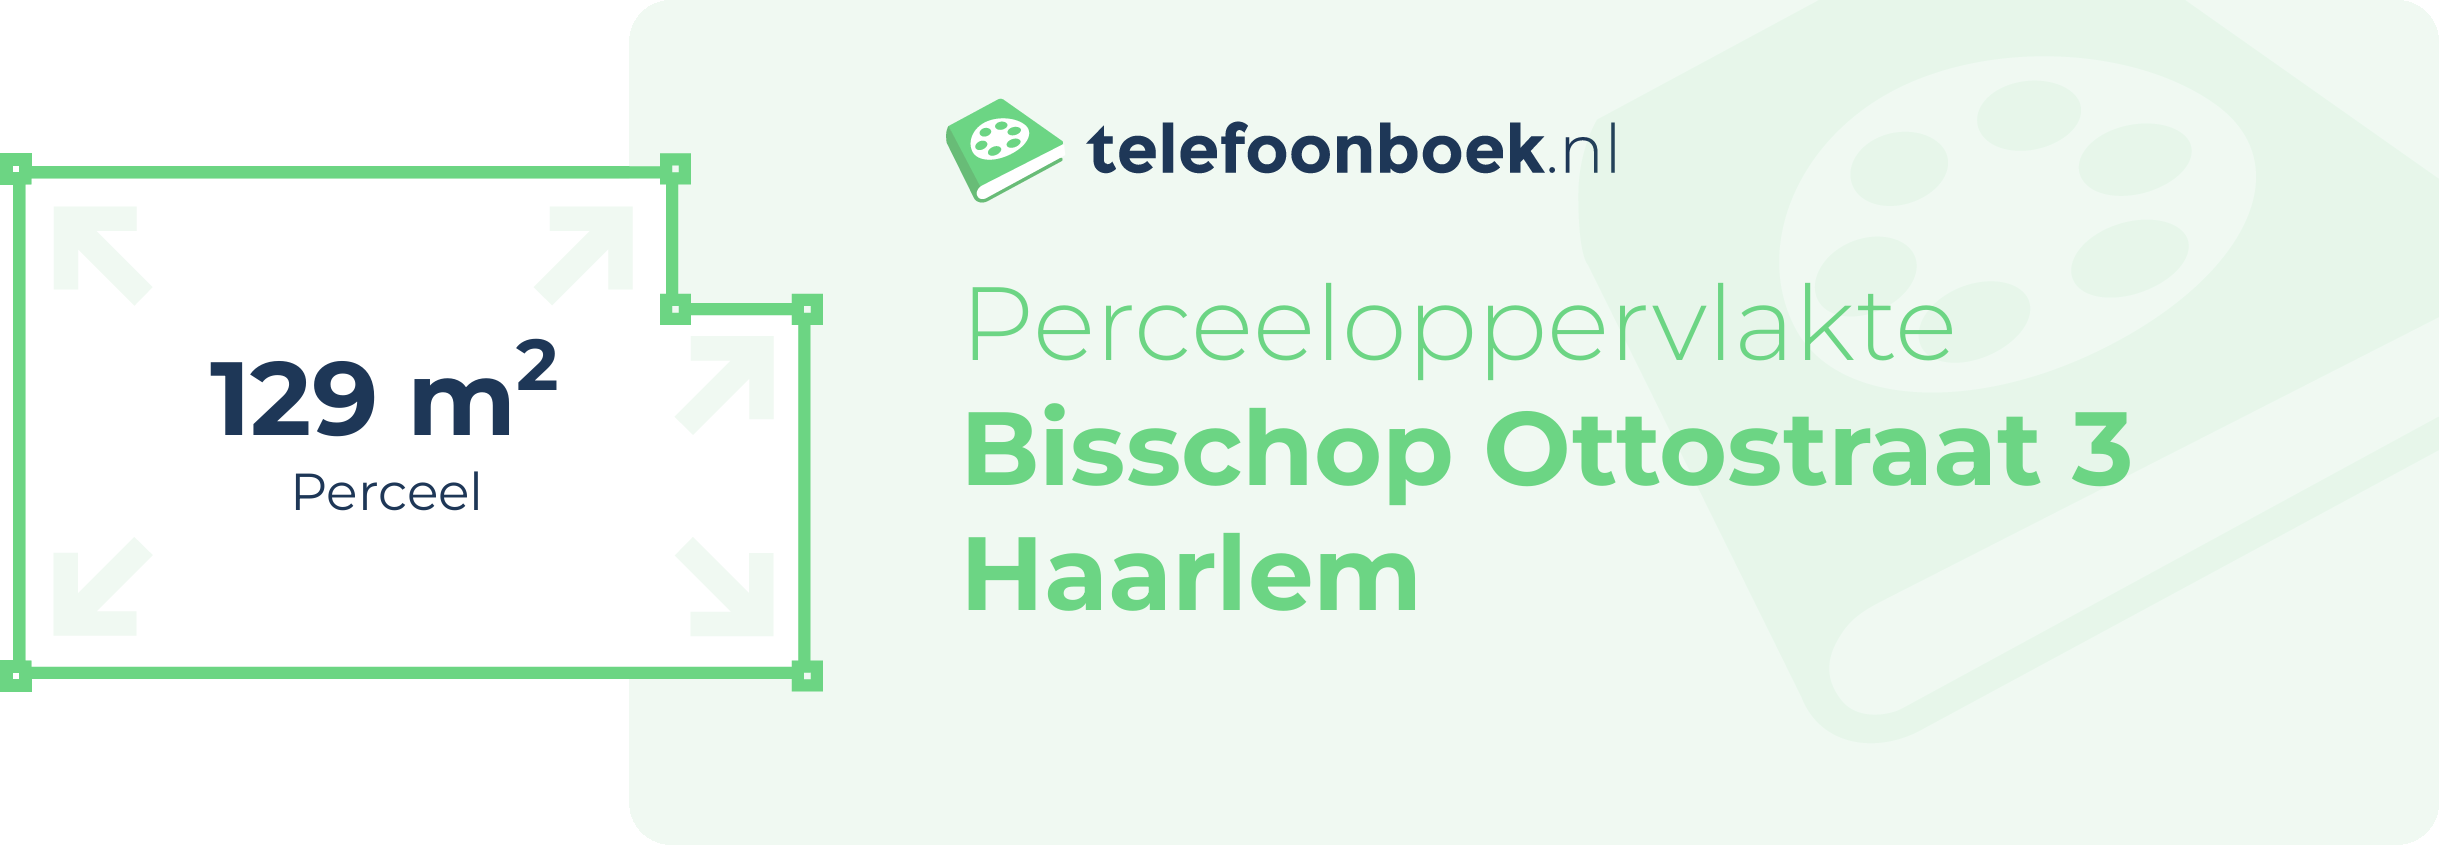 Perceeloppervlakte Bisschop Ottostraat 3 Haarlem